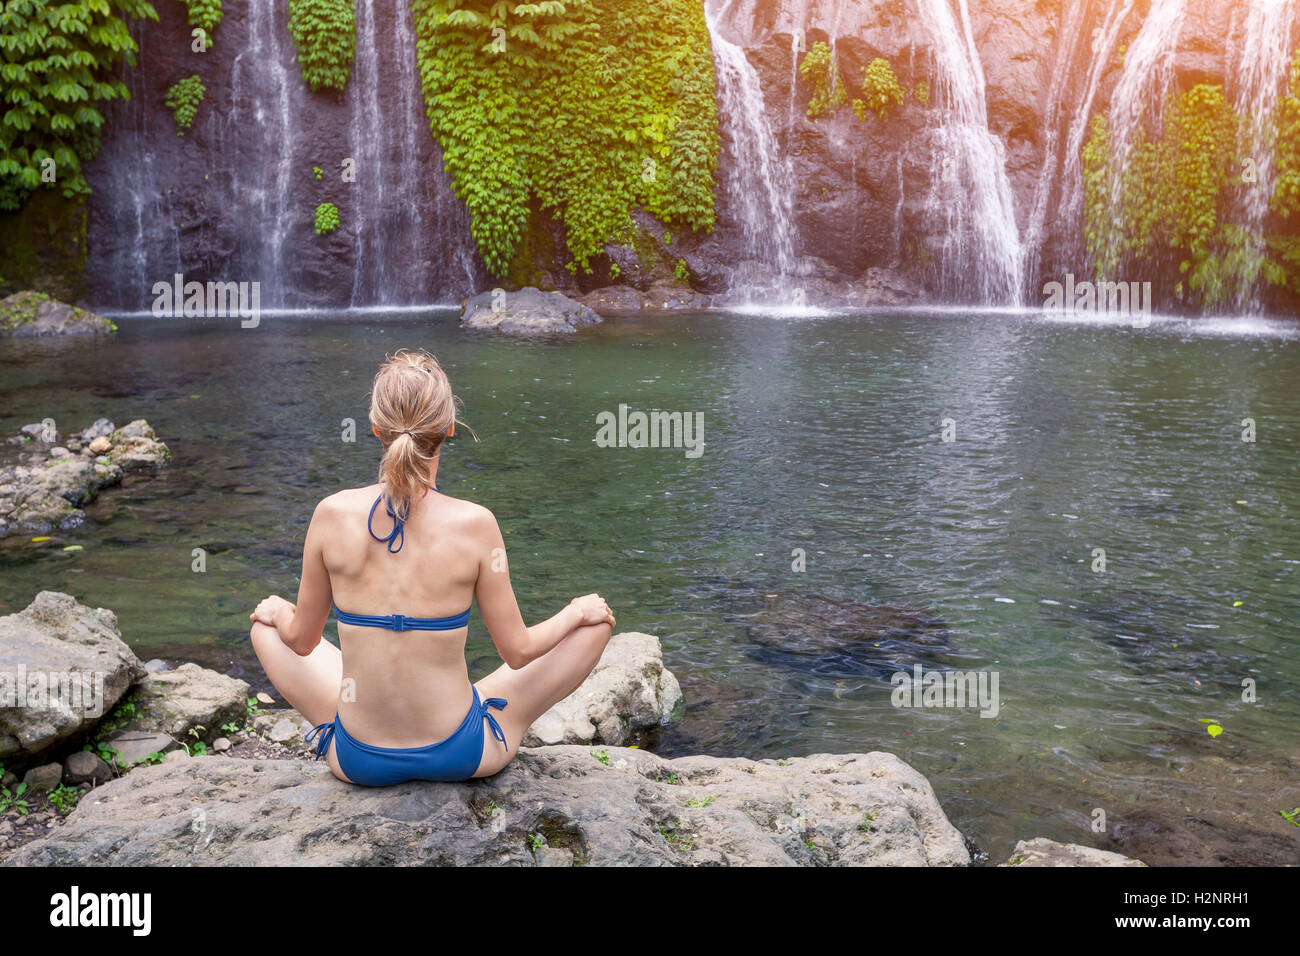 Chica practicando yoga y meditación en la postura del loto en la naturaleza cerca de una cascada. Foto de stock